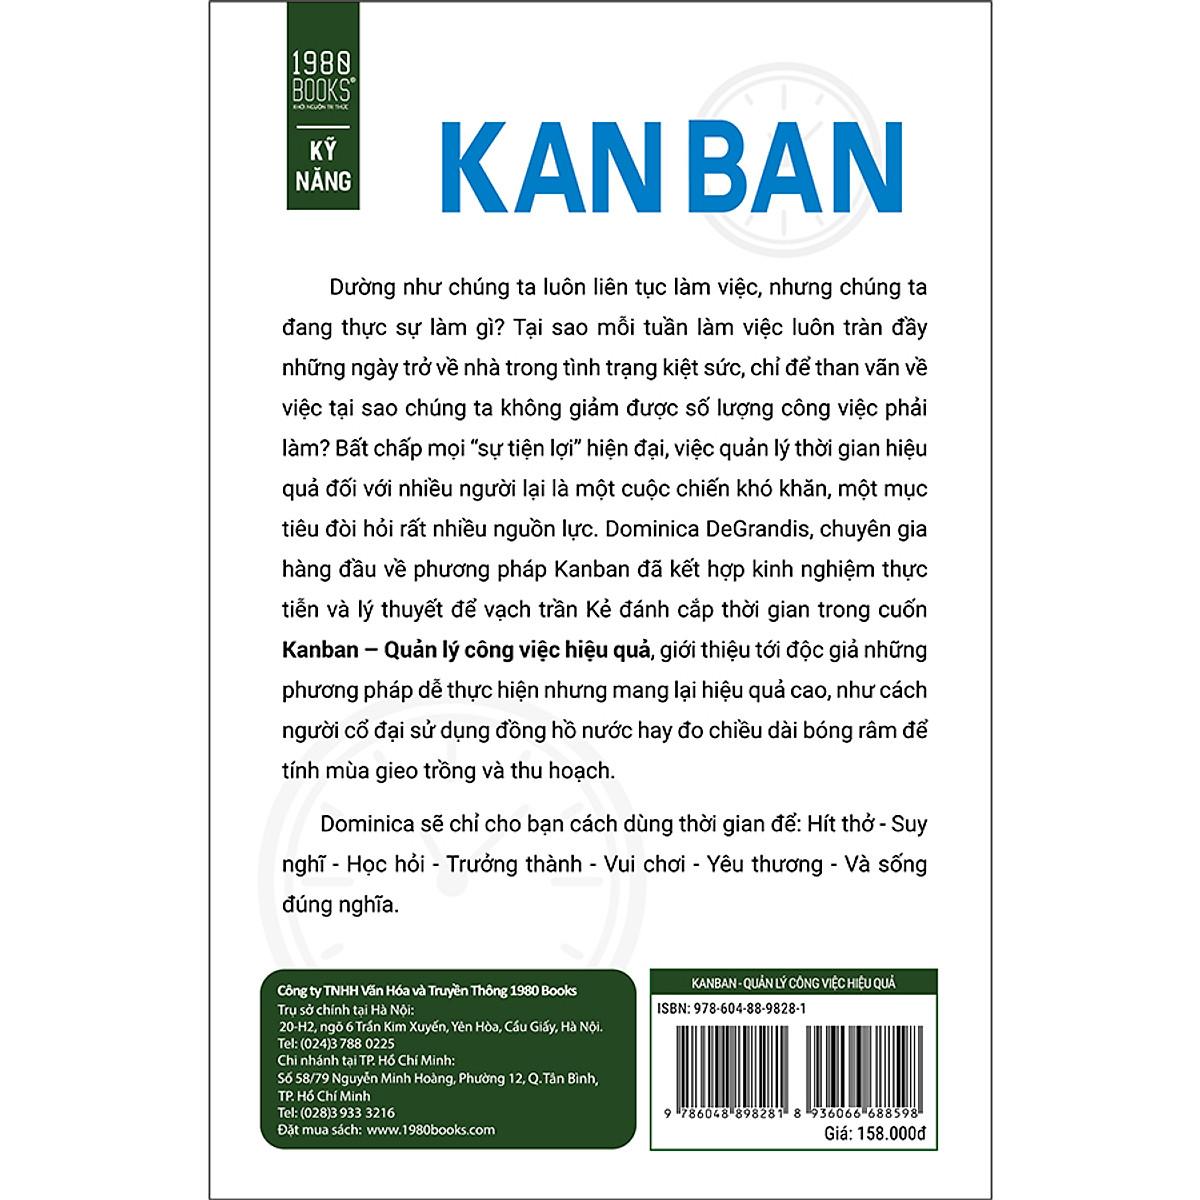 Kanban - Quản Lý Công Việc Hiệu Quả - Bản Quyền